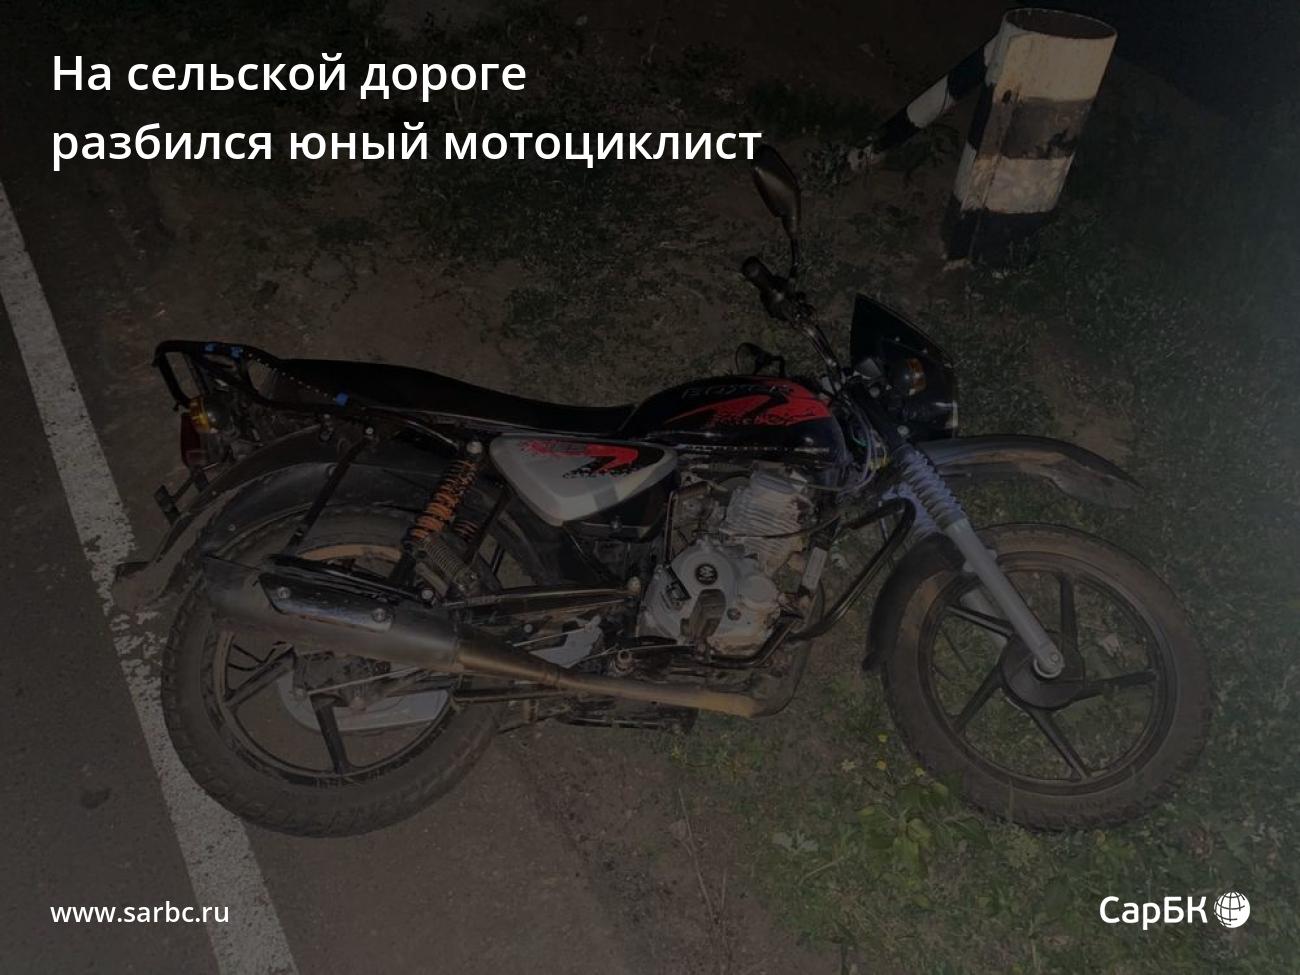 Разбитый мотоцикл на сельской дороге